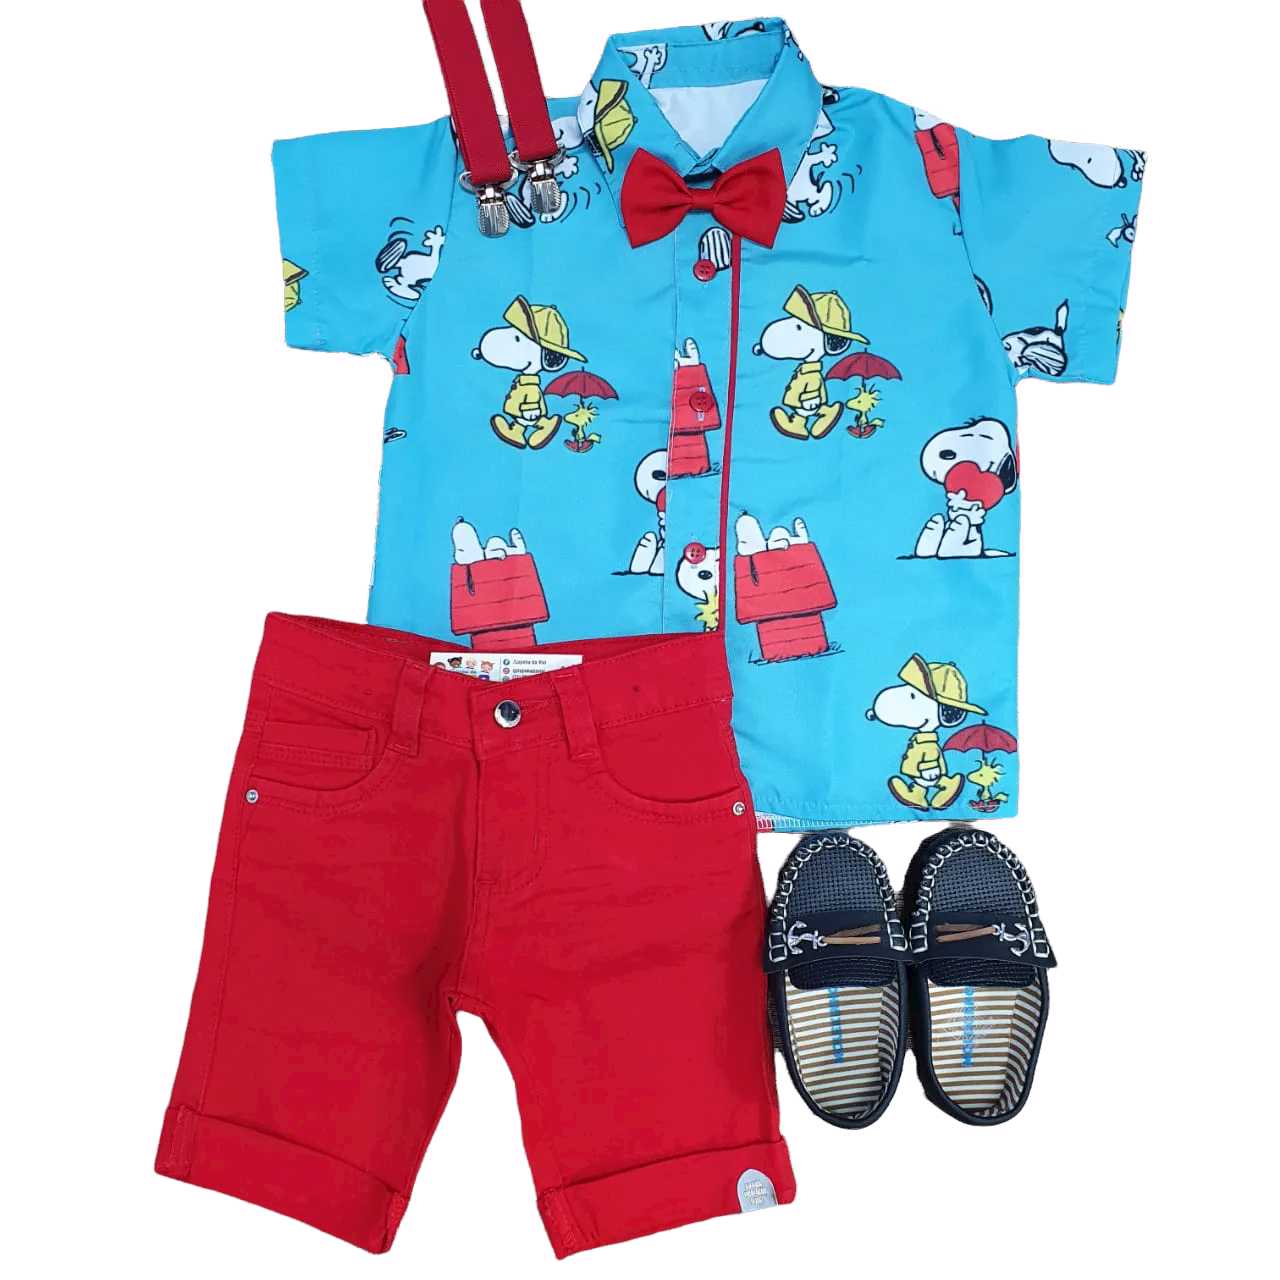 Bermuda Vermelha com Camisa Snoopy Infantil